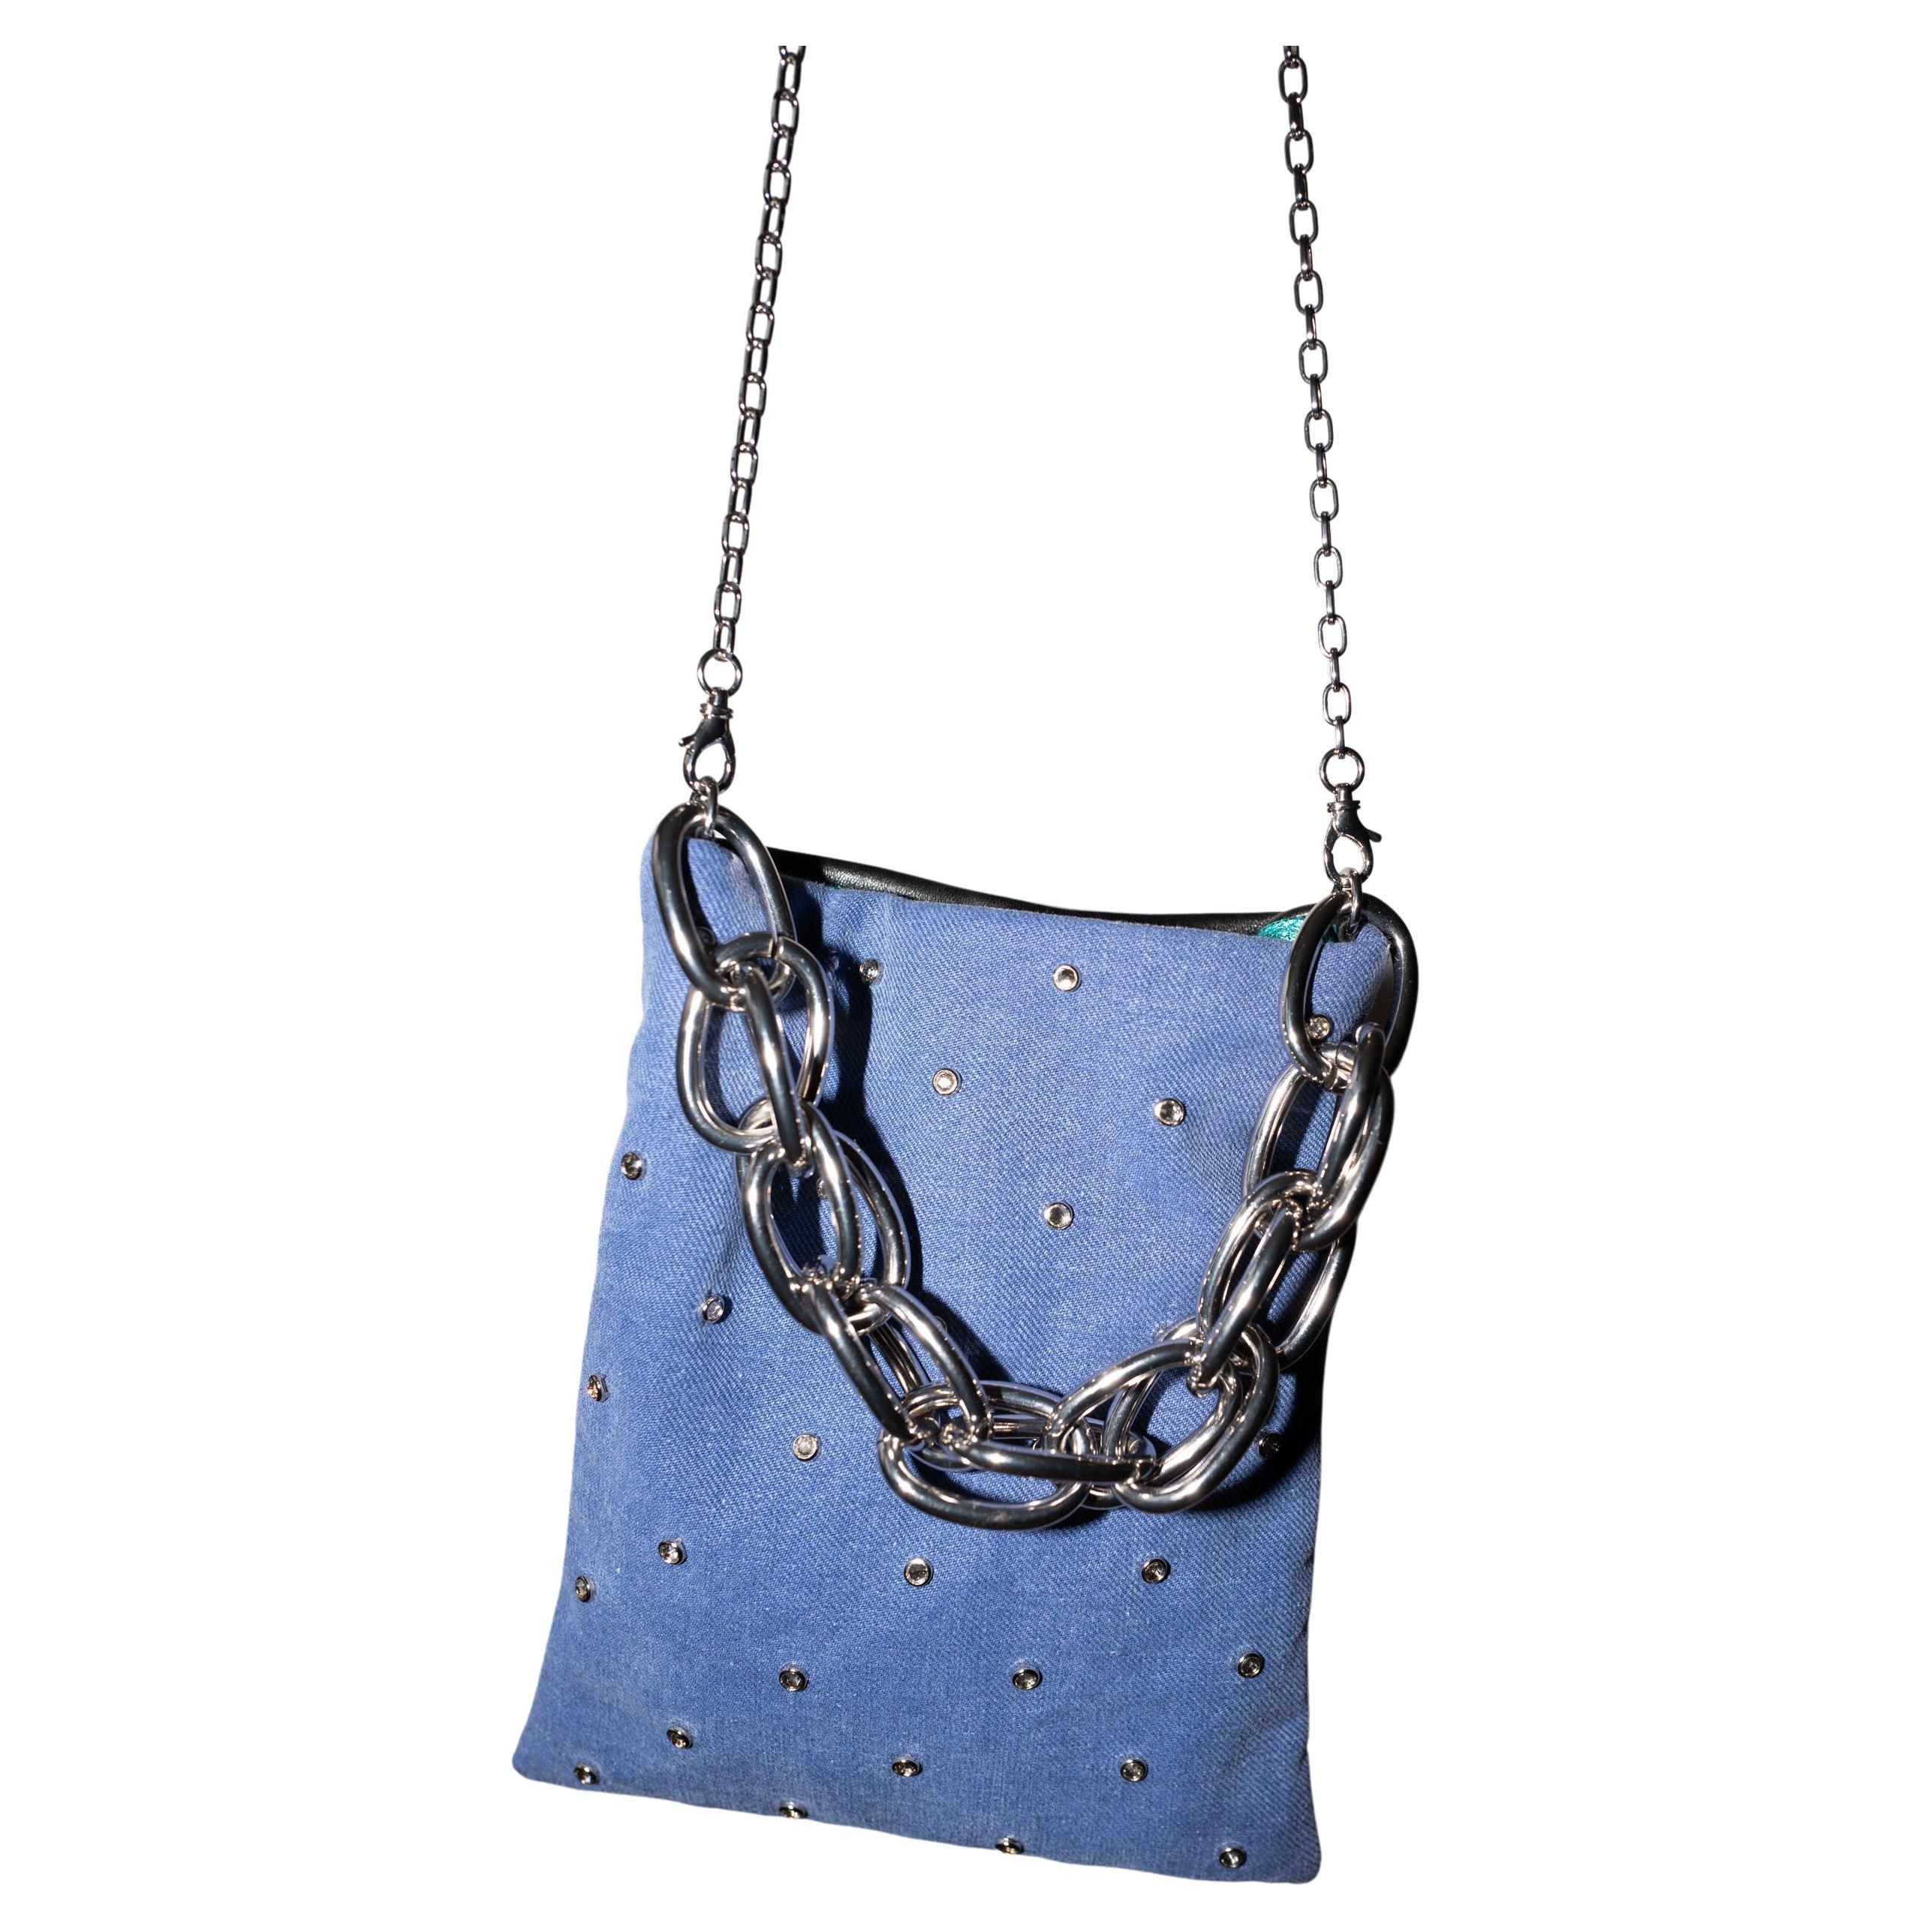 Crystal Embellished Blue Evening Shoulder Bag Black Leather Chunky Chain For Sale